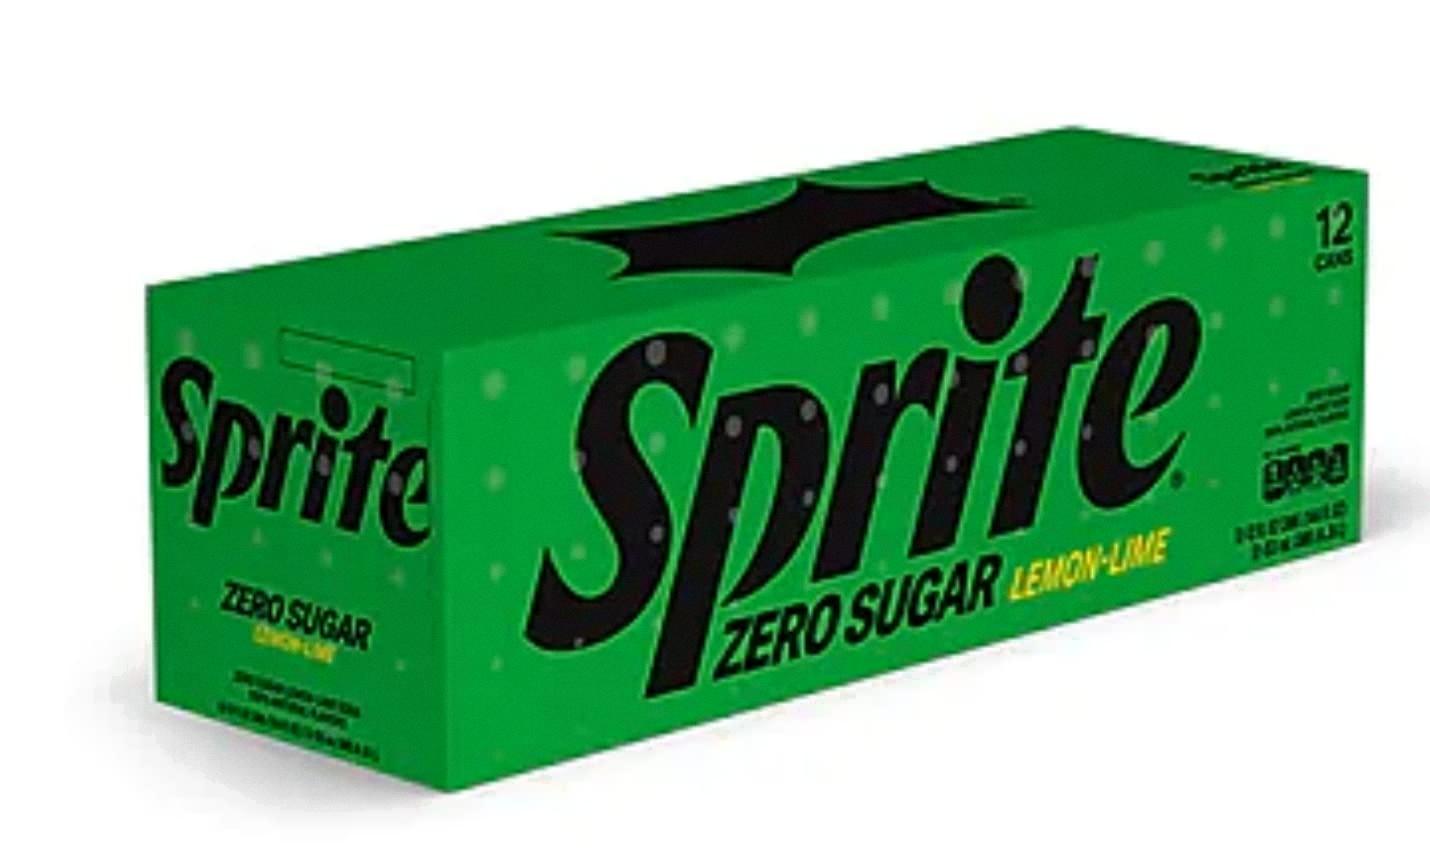 does sprite zero have caffeine